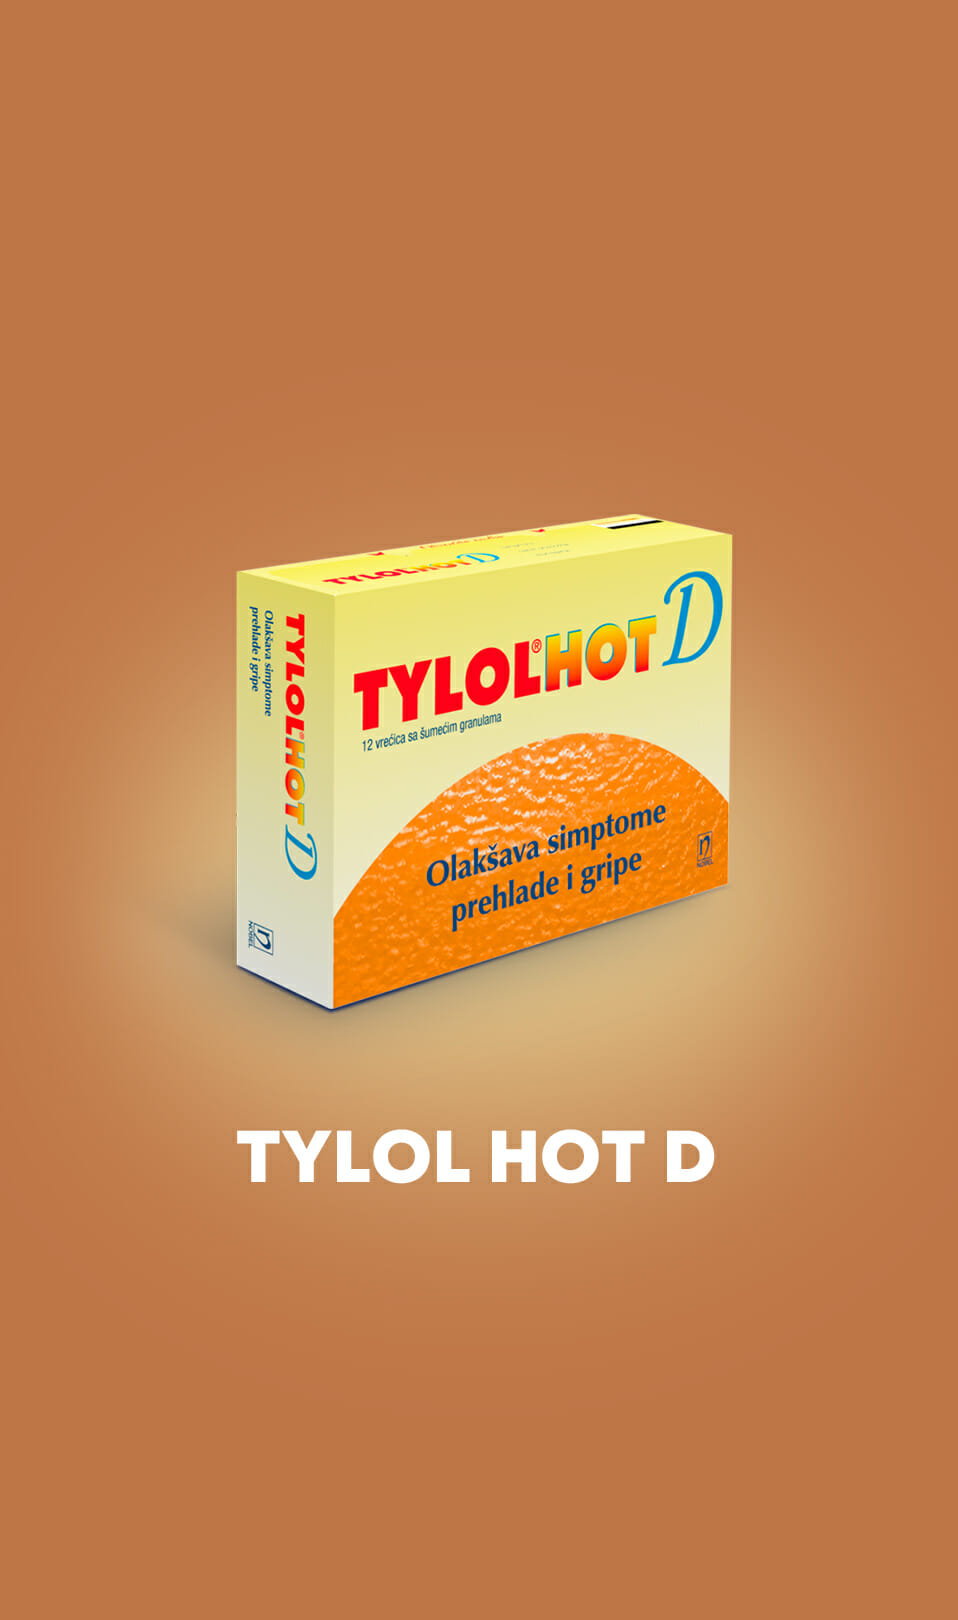 Tylol hot d